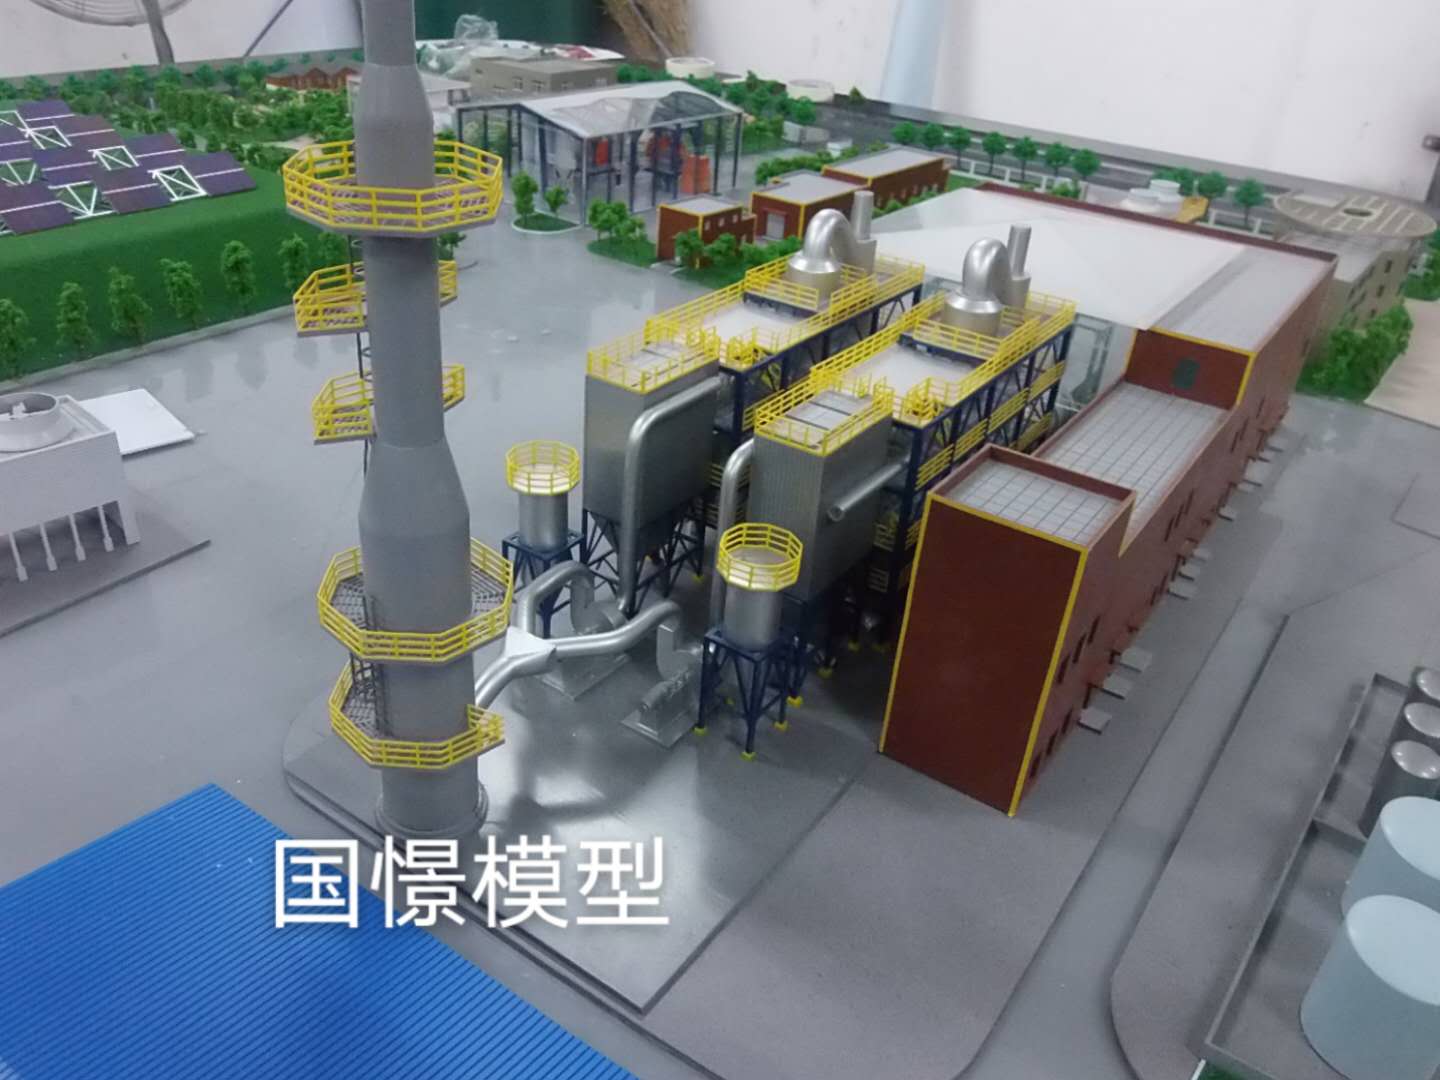 清徐县工业模型